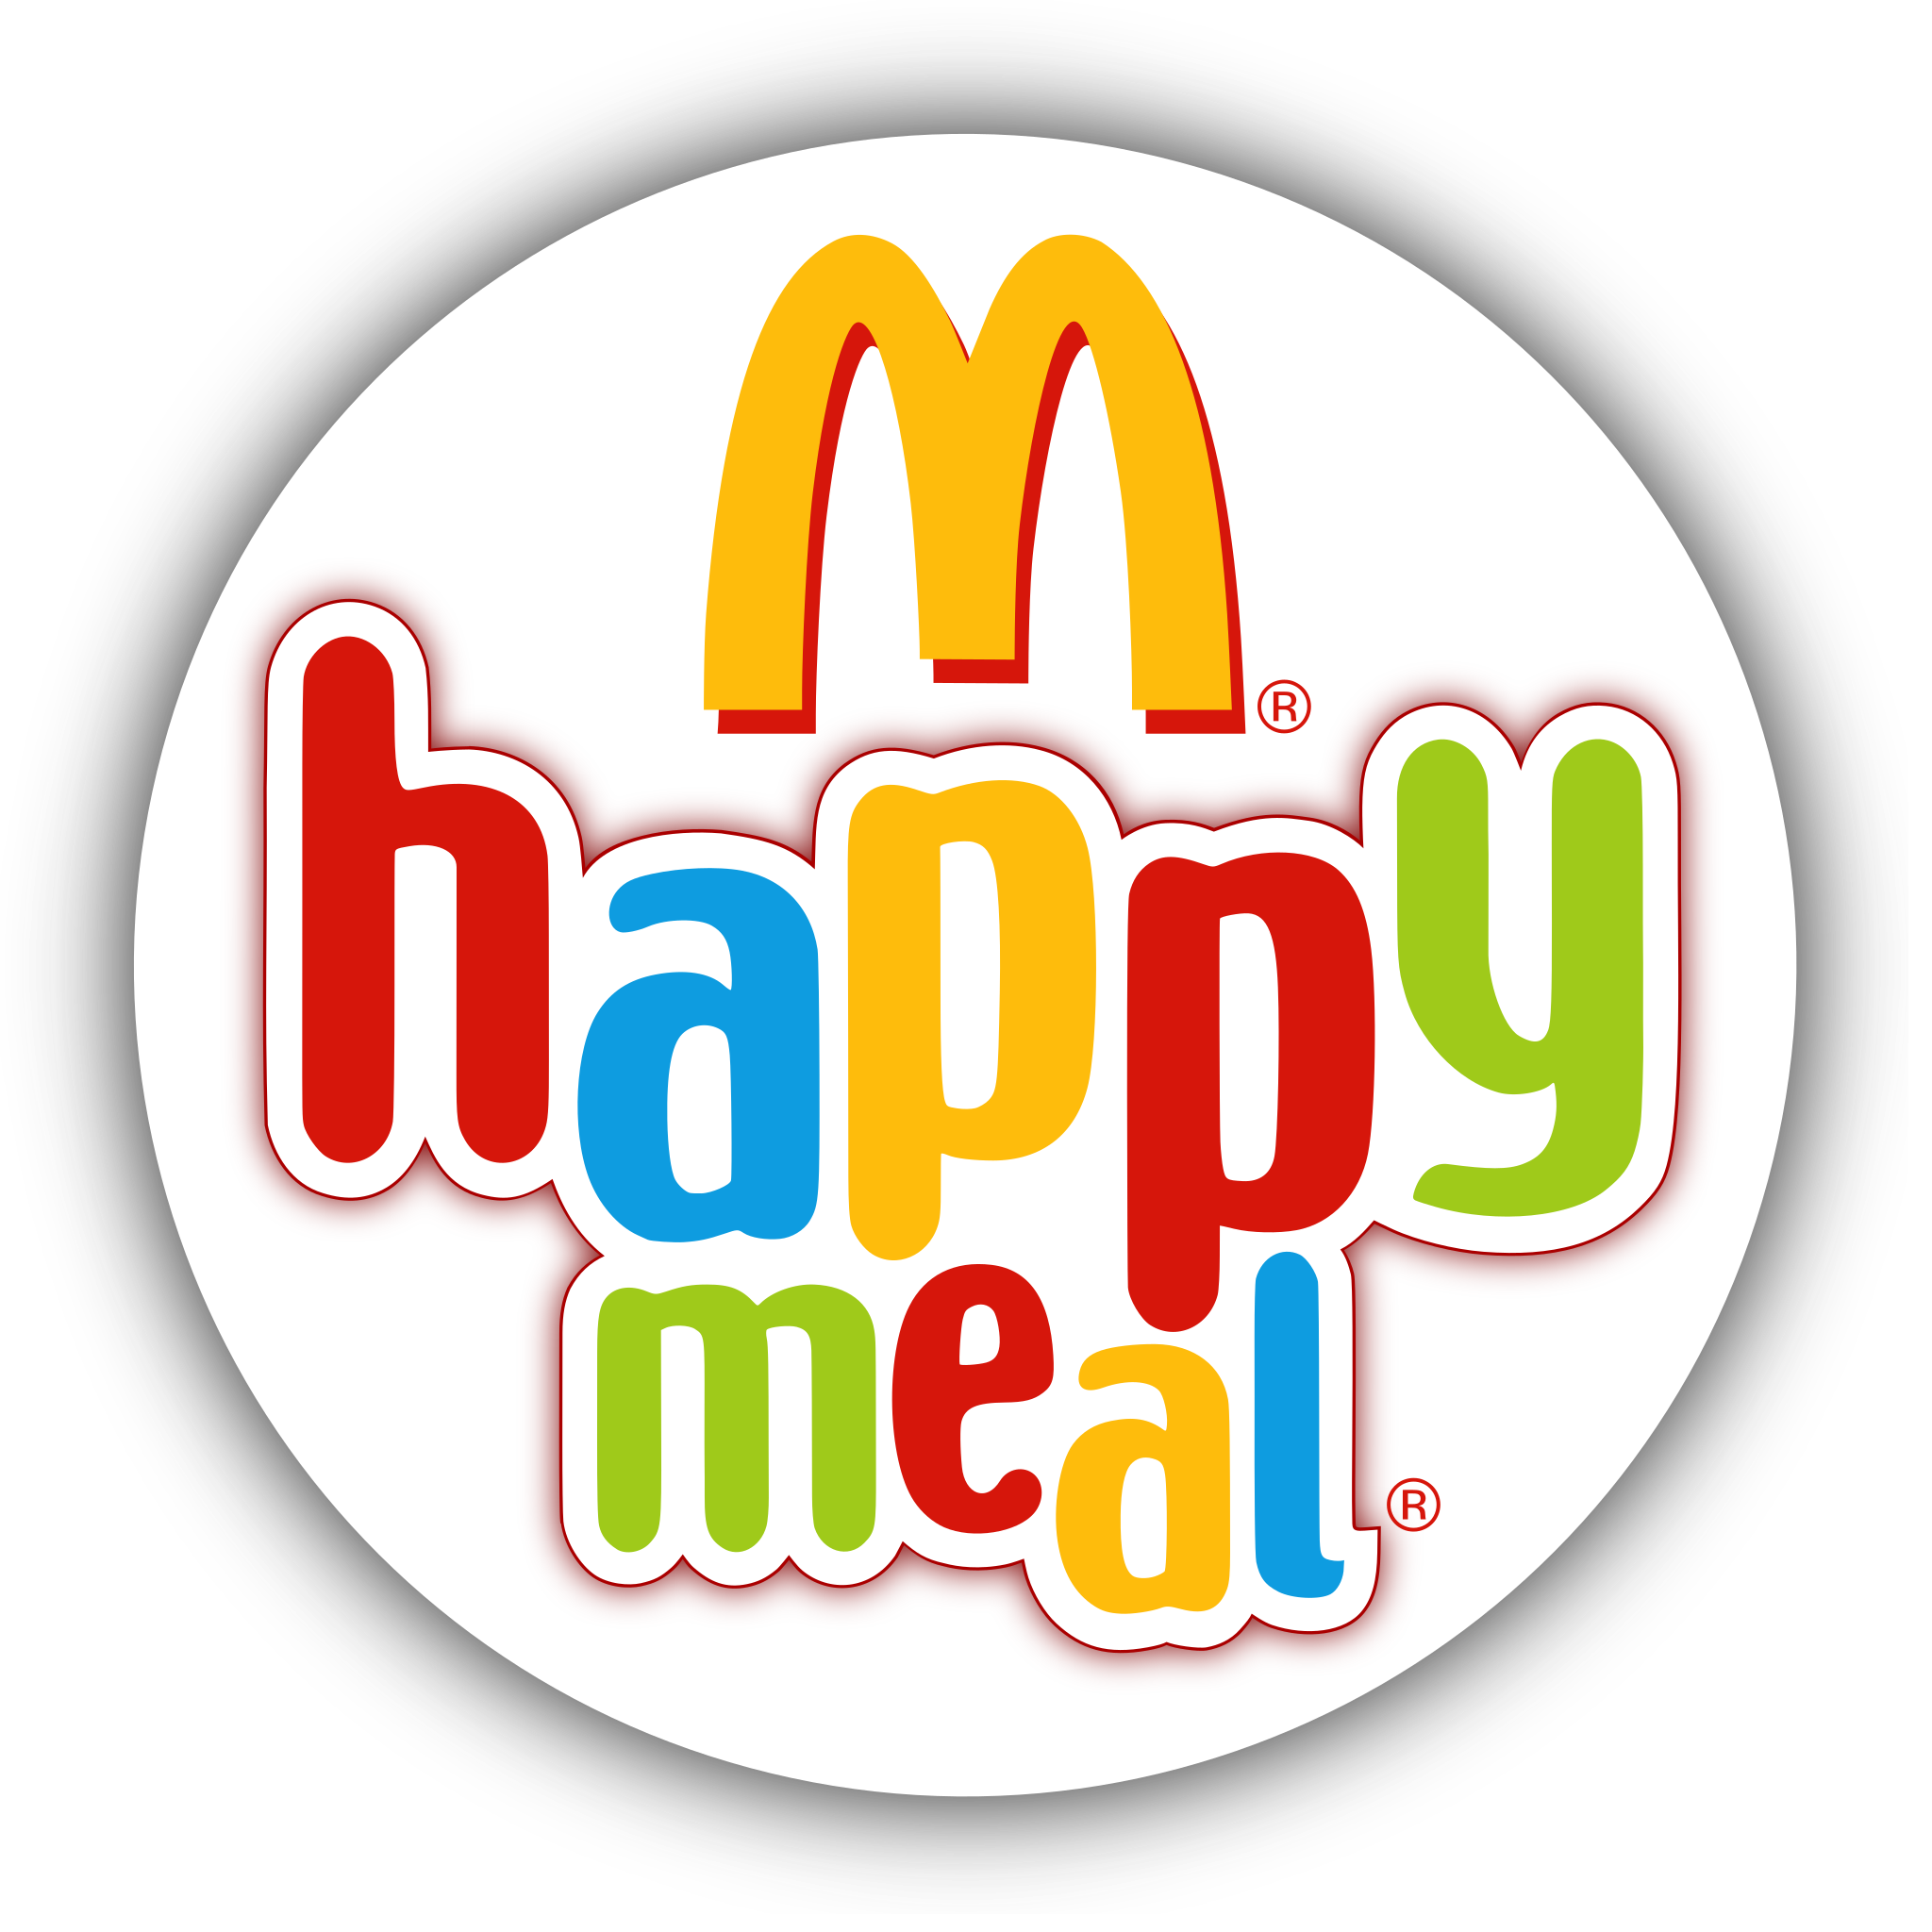 Vì sao biểu tượng McDonald\'s lại trở thành biểu tượng nổi tiếng như vậy?